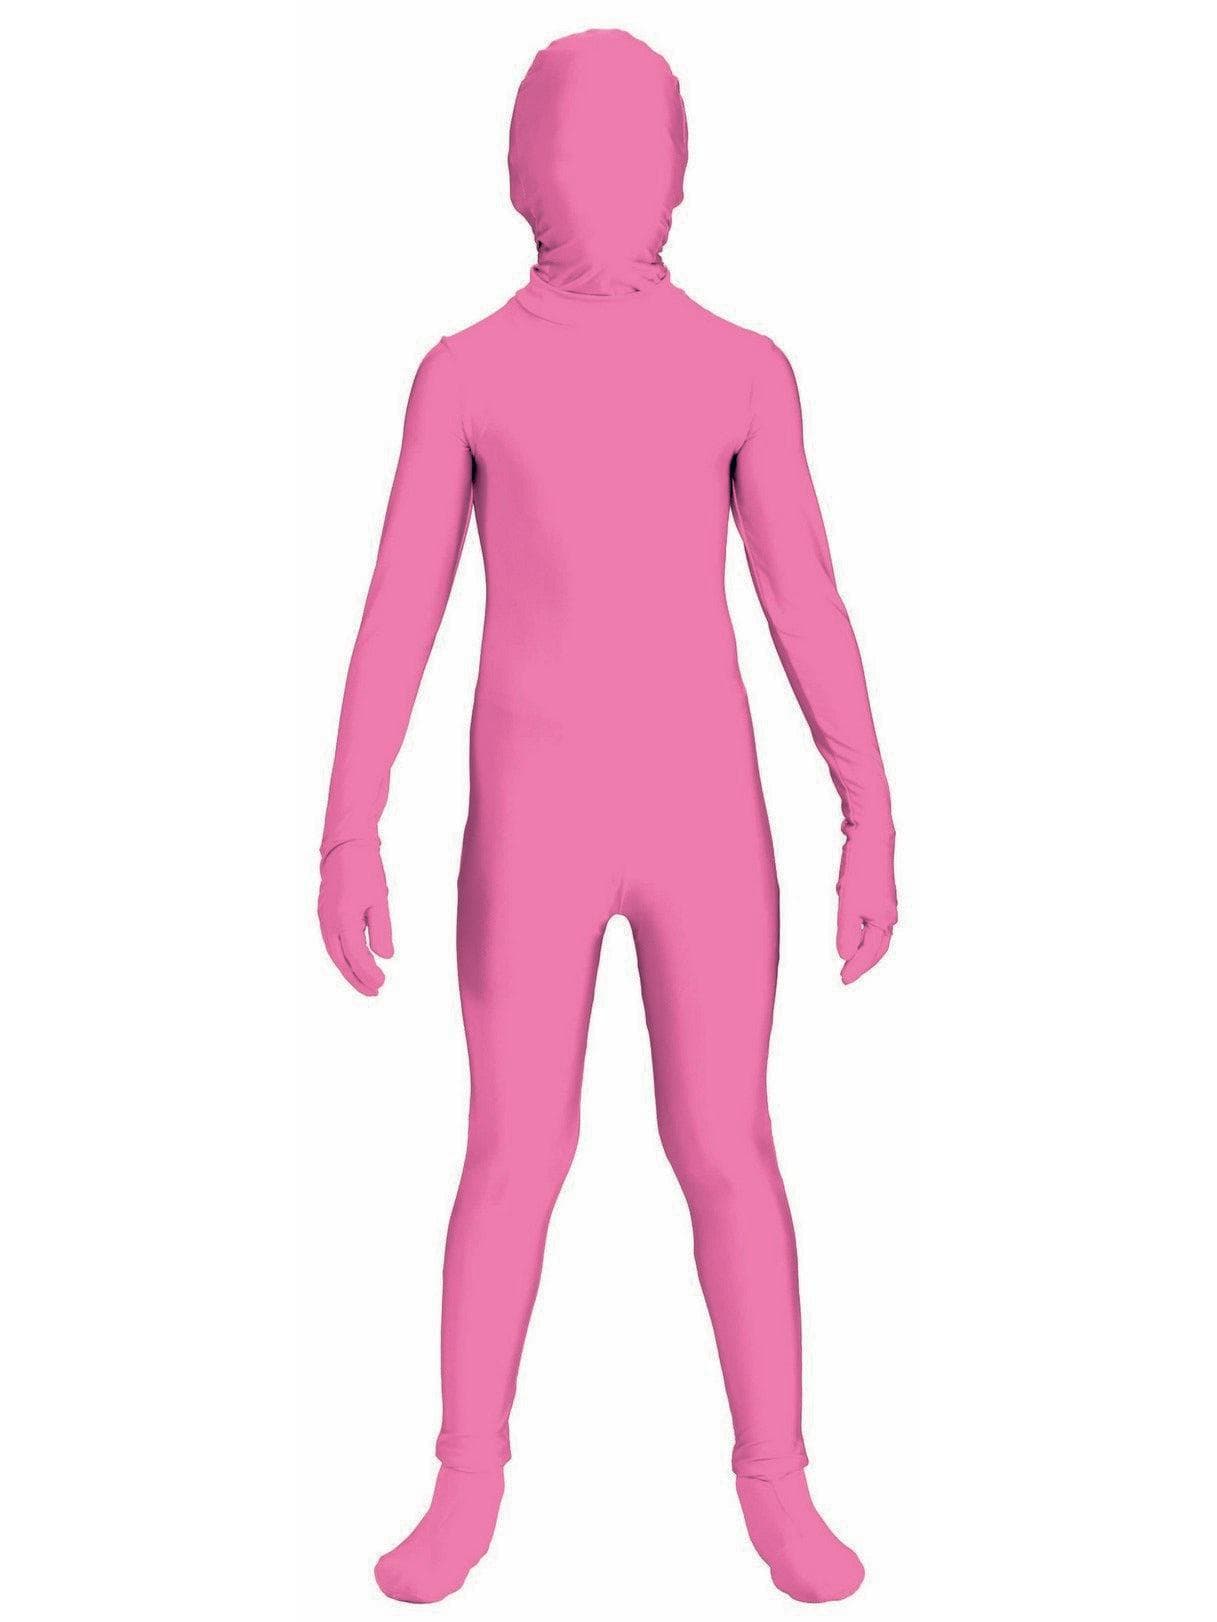 Kid's Pink Skinsuit Costume - costumes.com